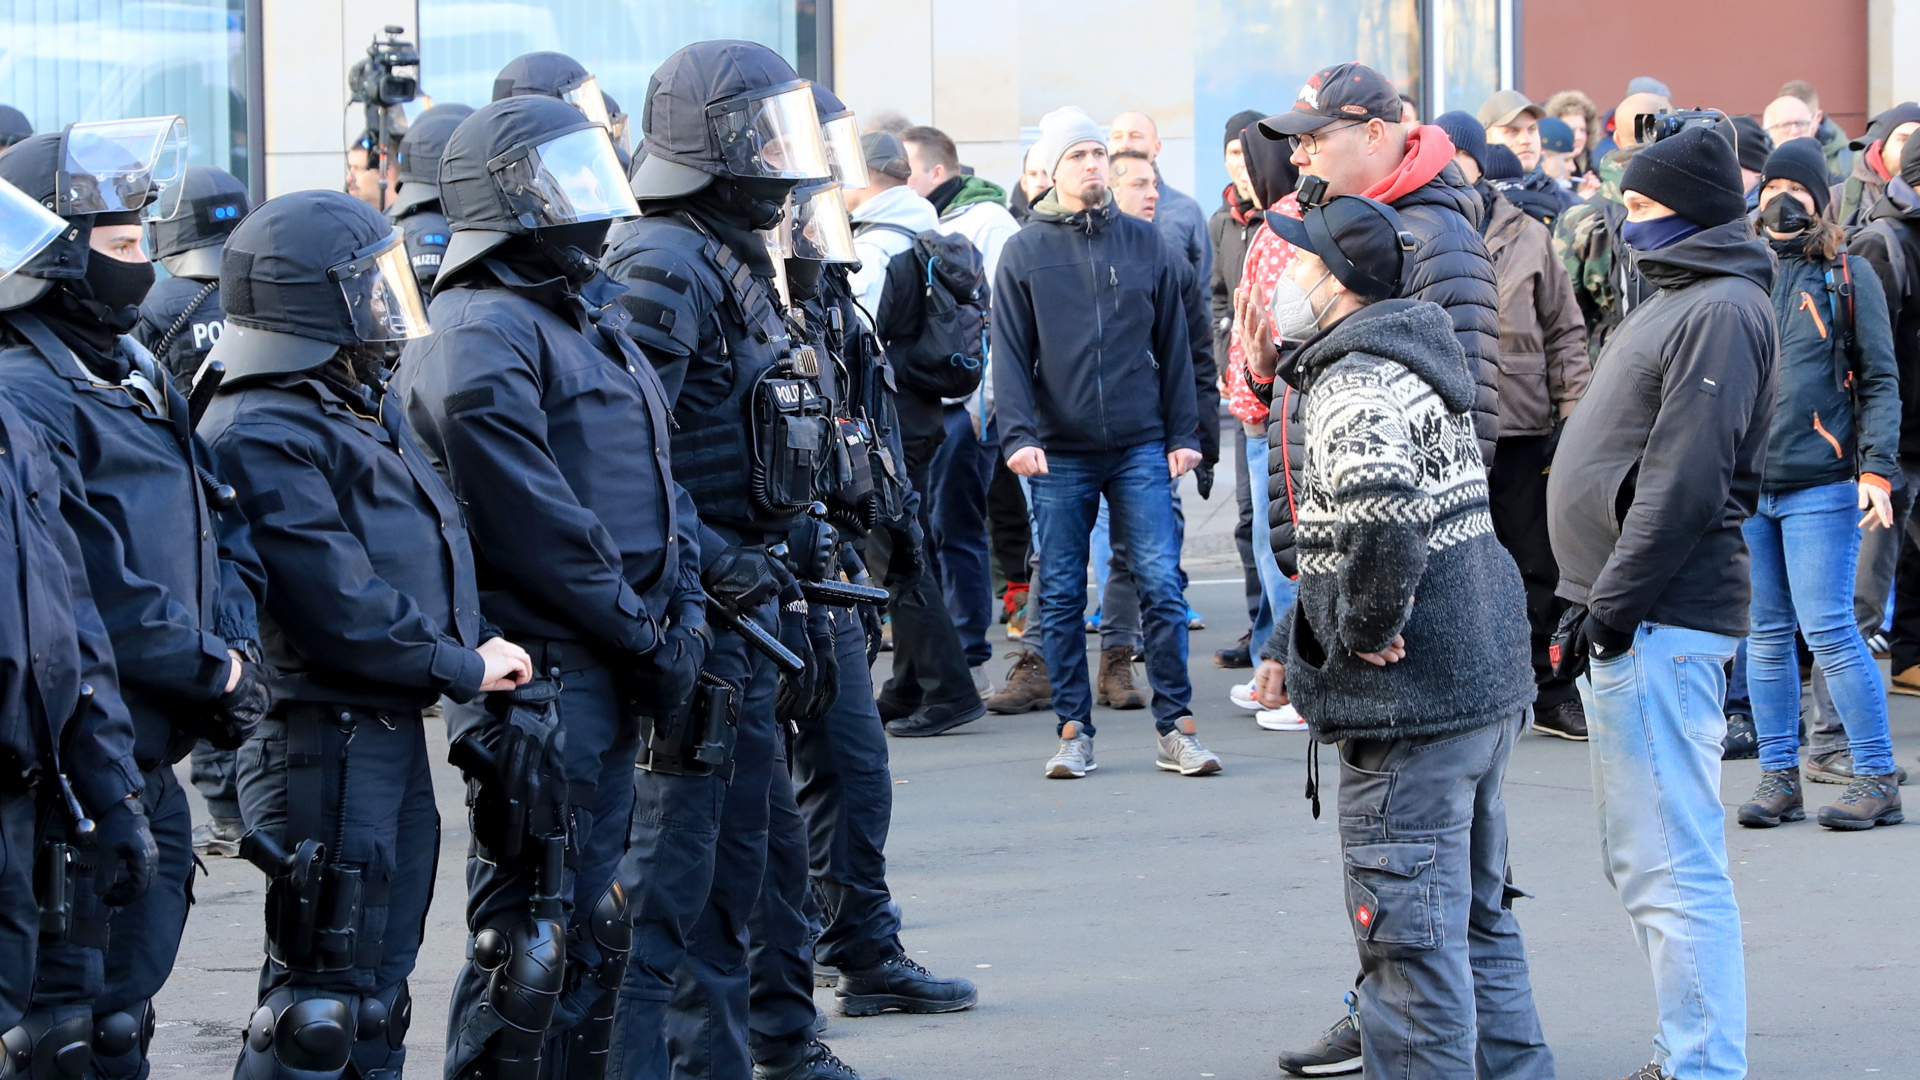  Polizisten und Teilnehmer einer Versammlung stehen sich in der Innenstadt von Magdeburg gegenüber. | dpa